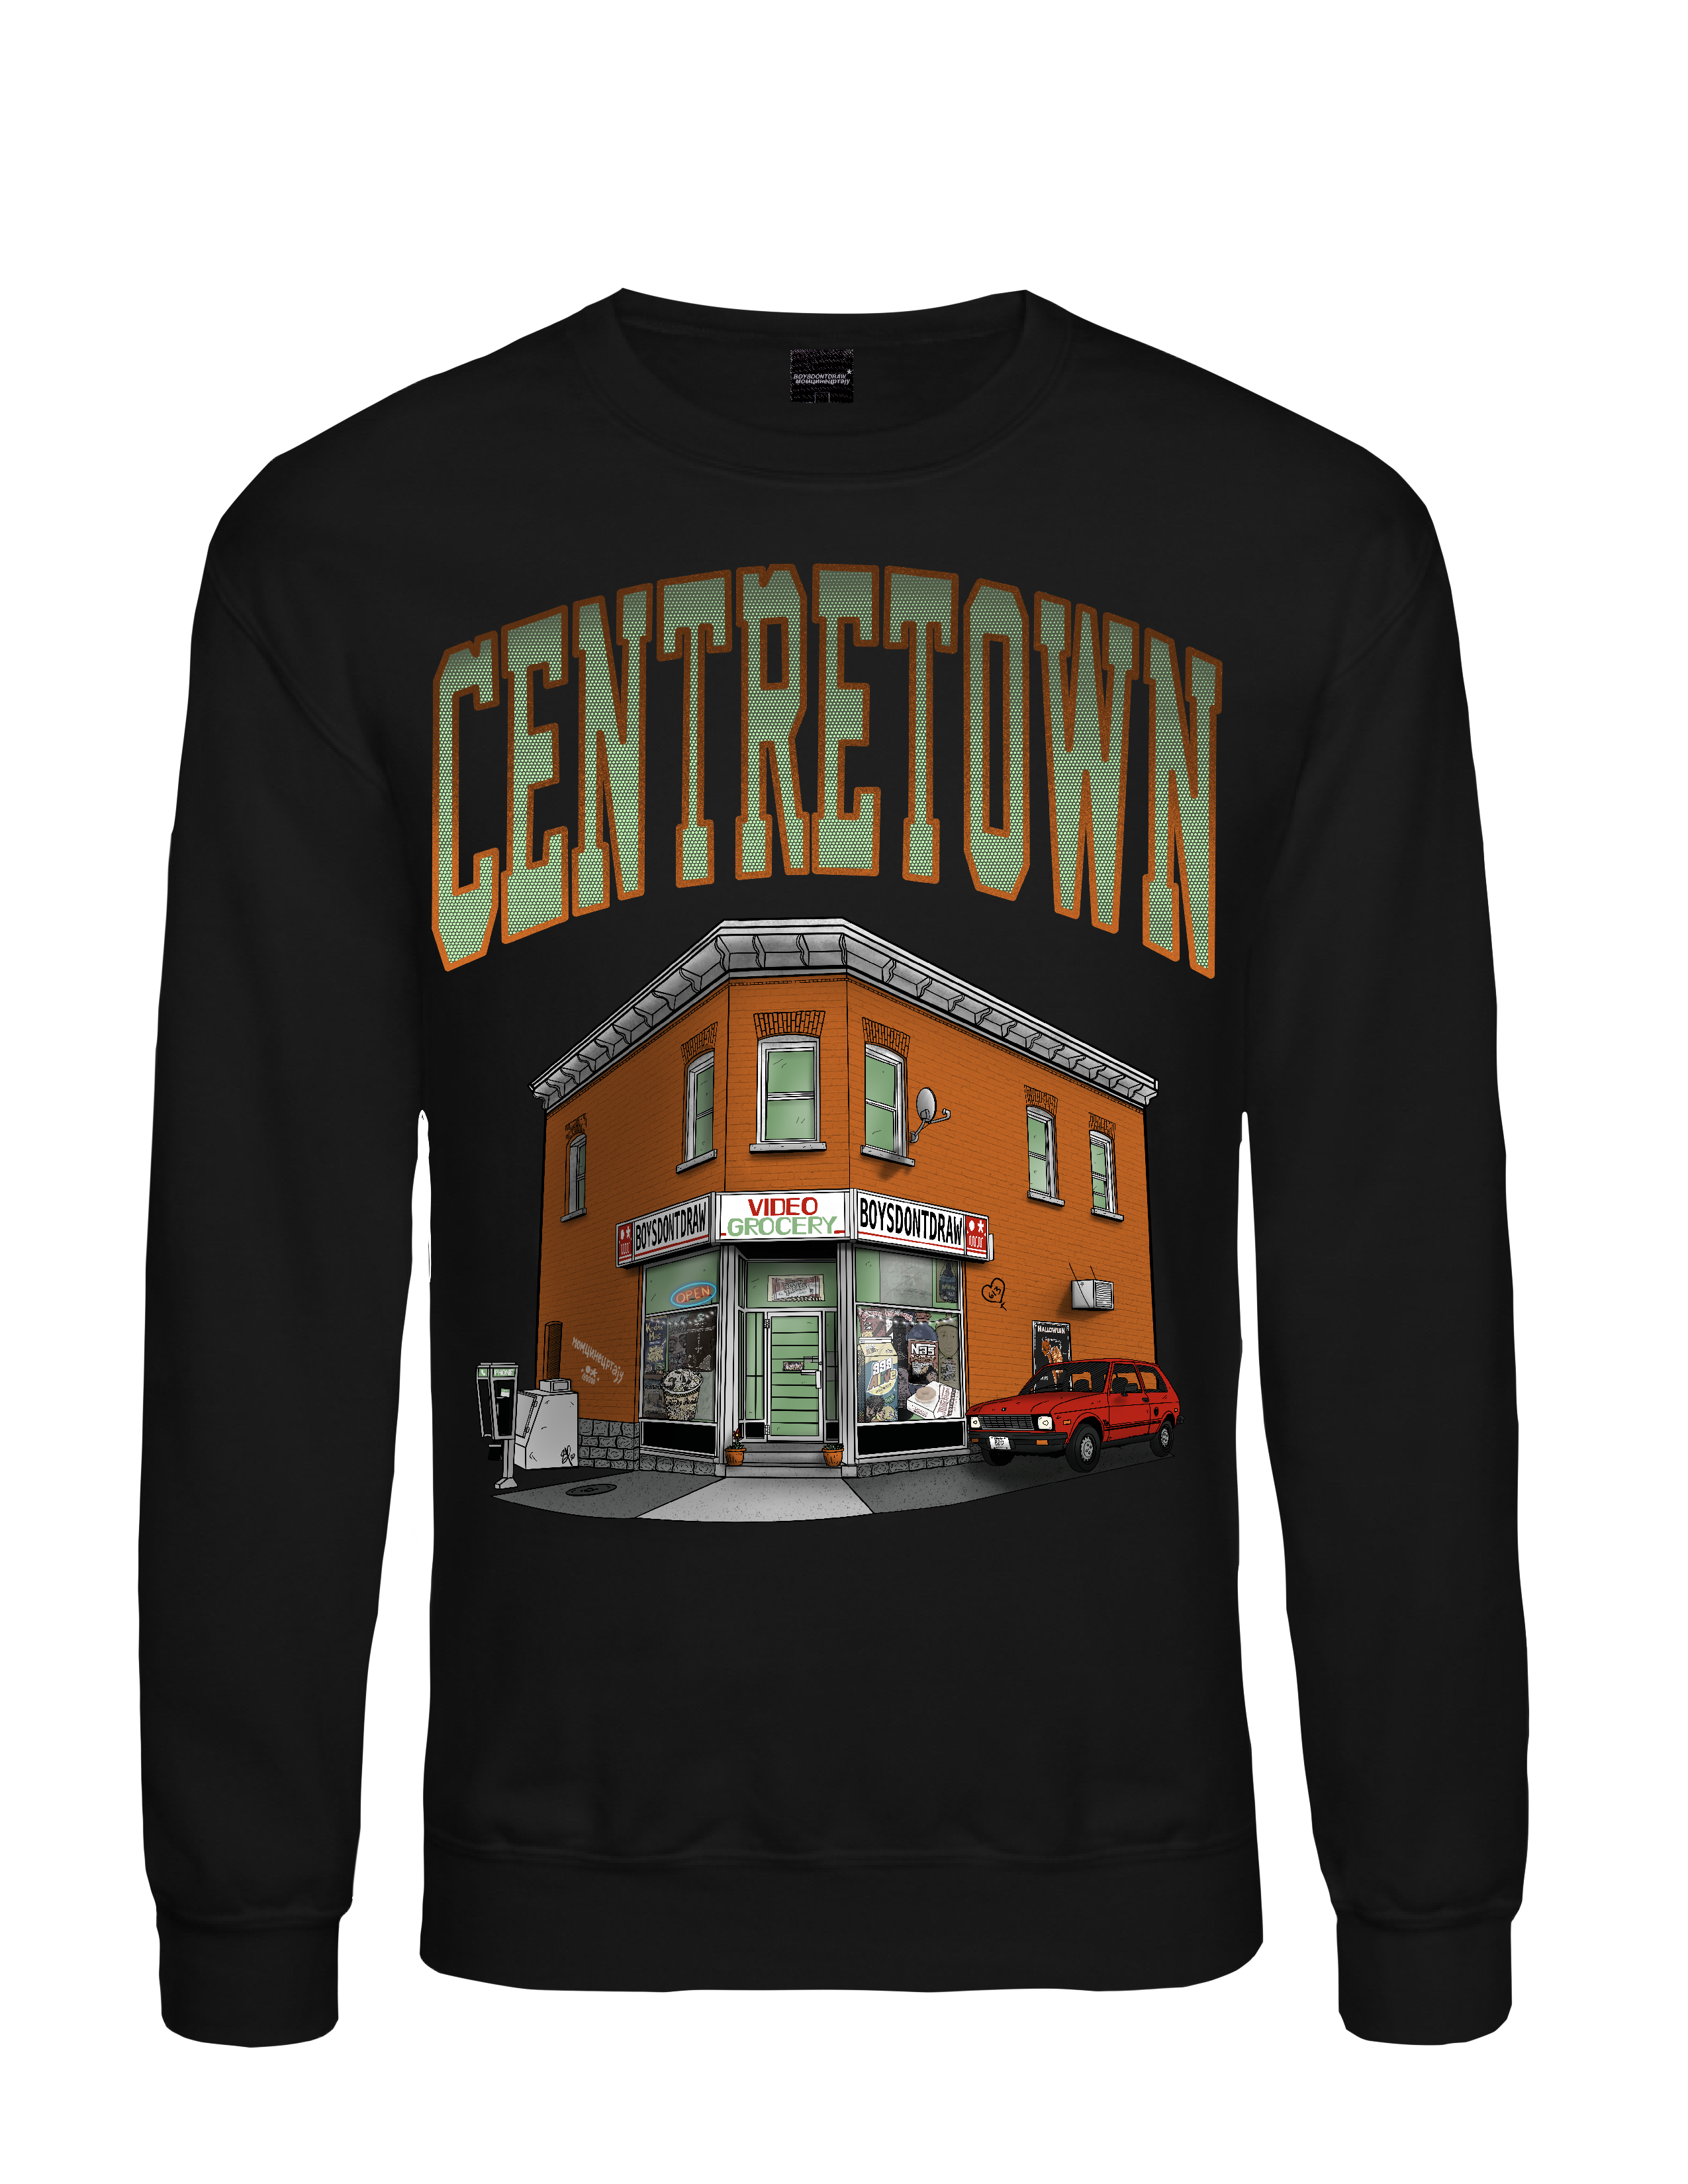 CENTRETOWN* // OTTAWA - Black Crewneck by BOYSDONTDRAW